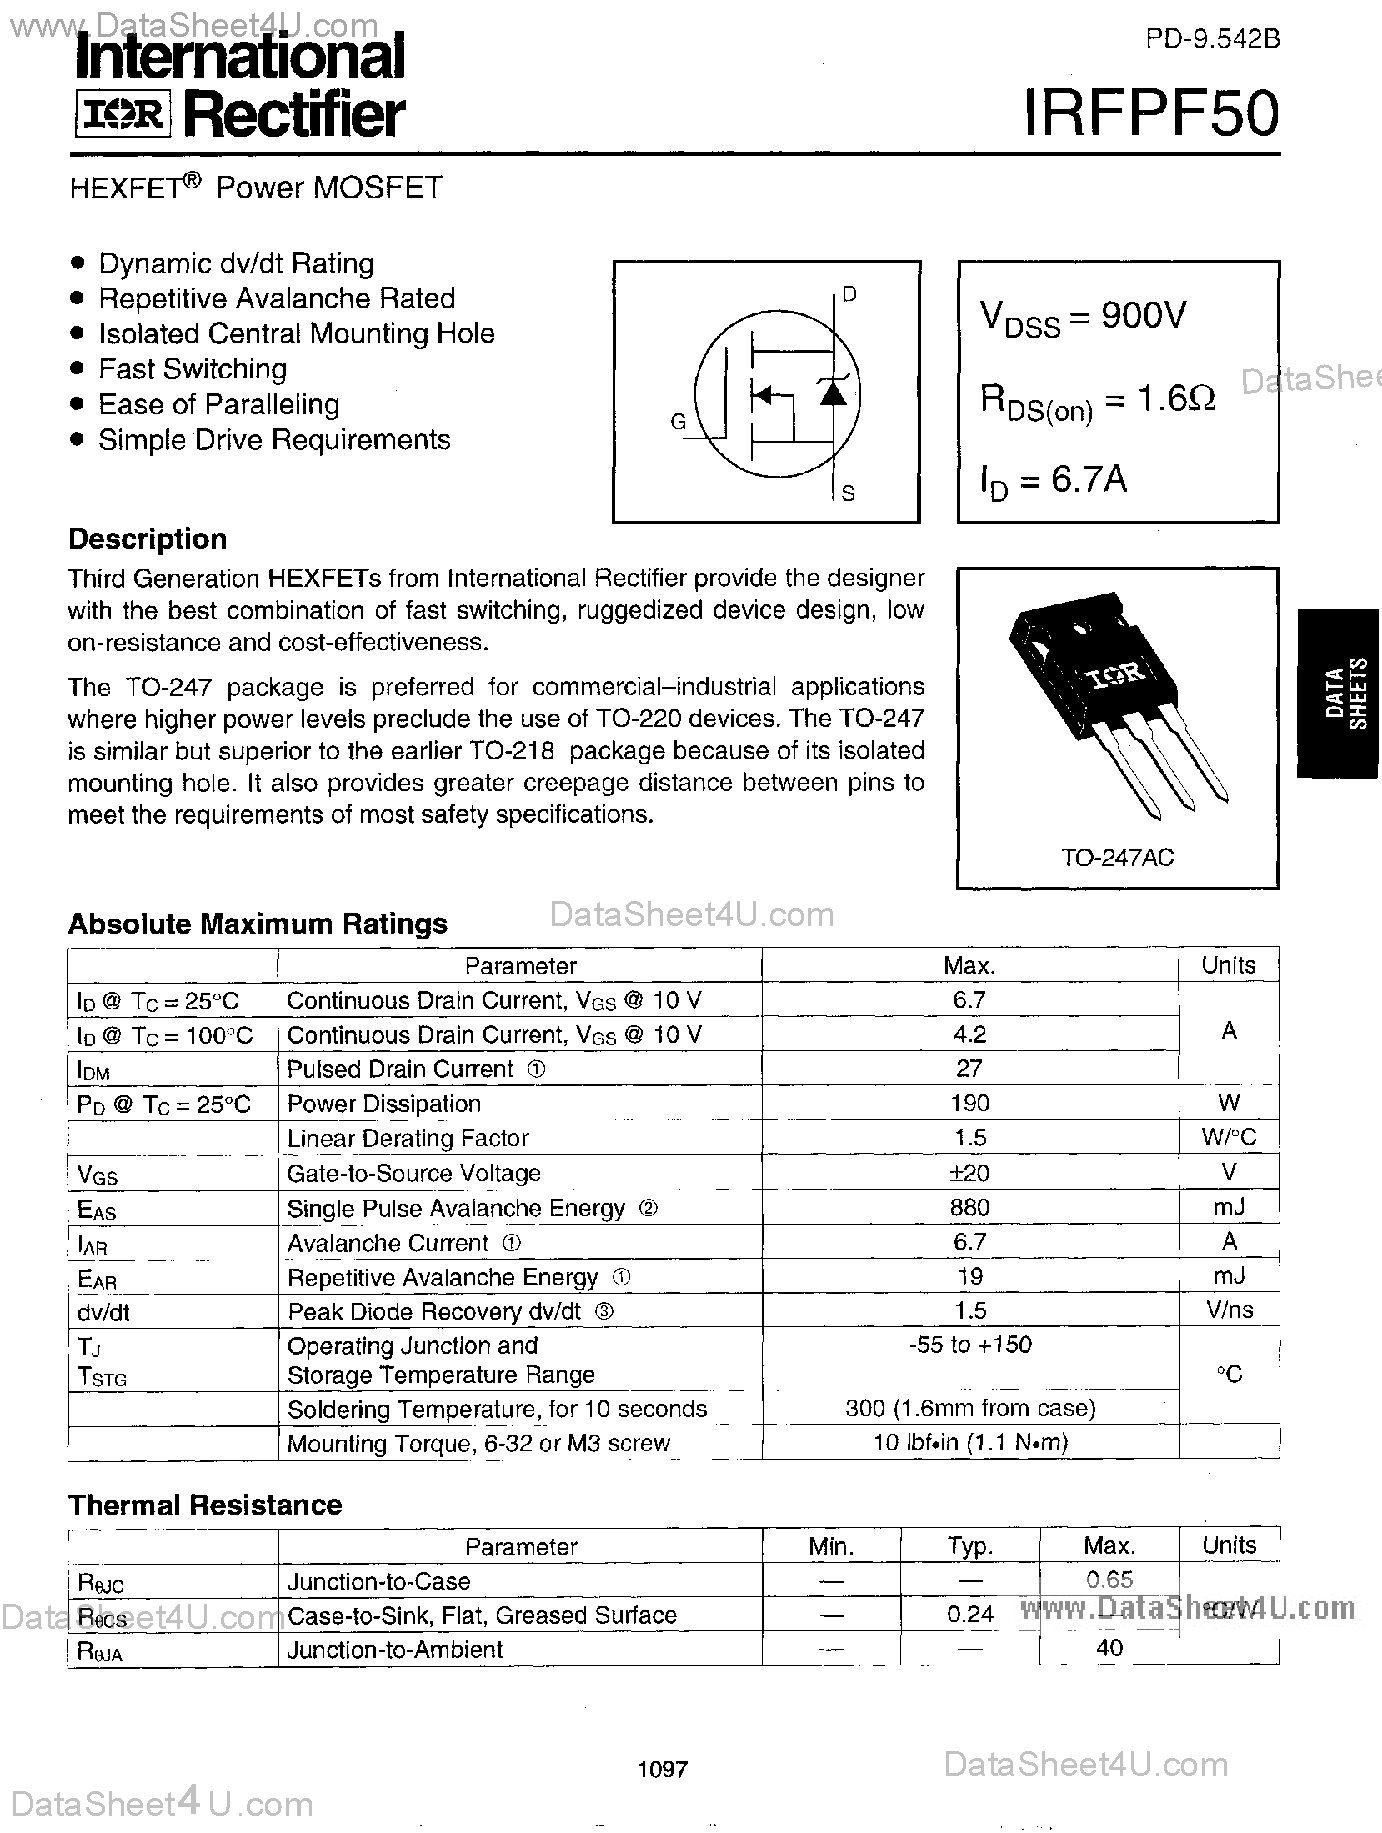 Даташит IRFPF50 - Power MOSFET страница 1